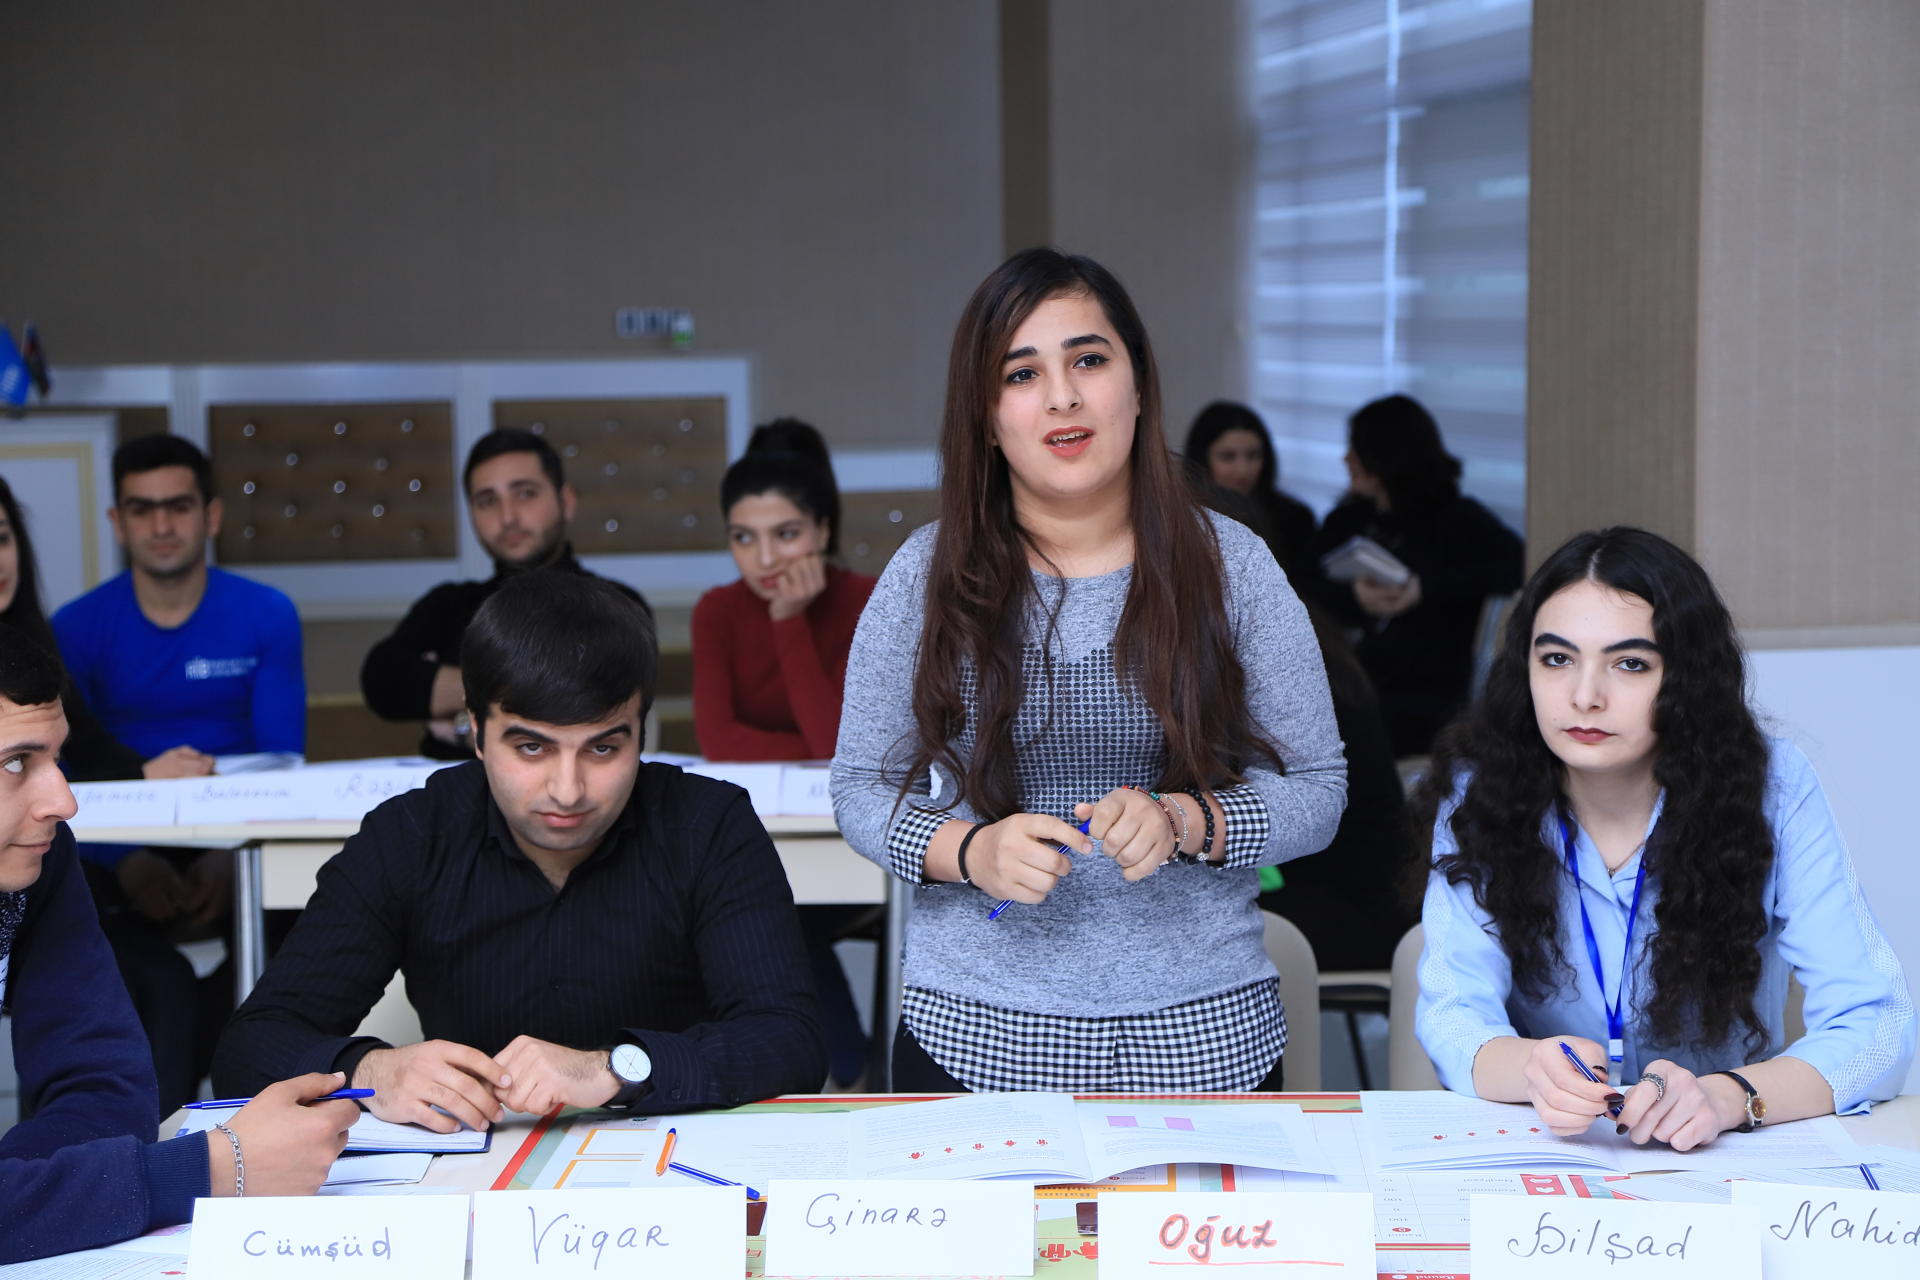 Общественное объединение "Региональное развитие" проводит тренинги по повышению финансовой грамотности в регионах Азербайджана (ФОТО)